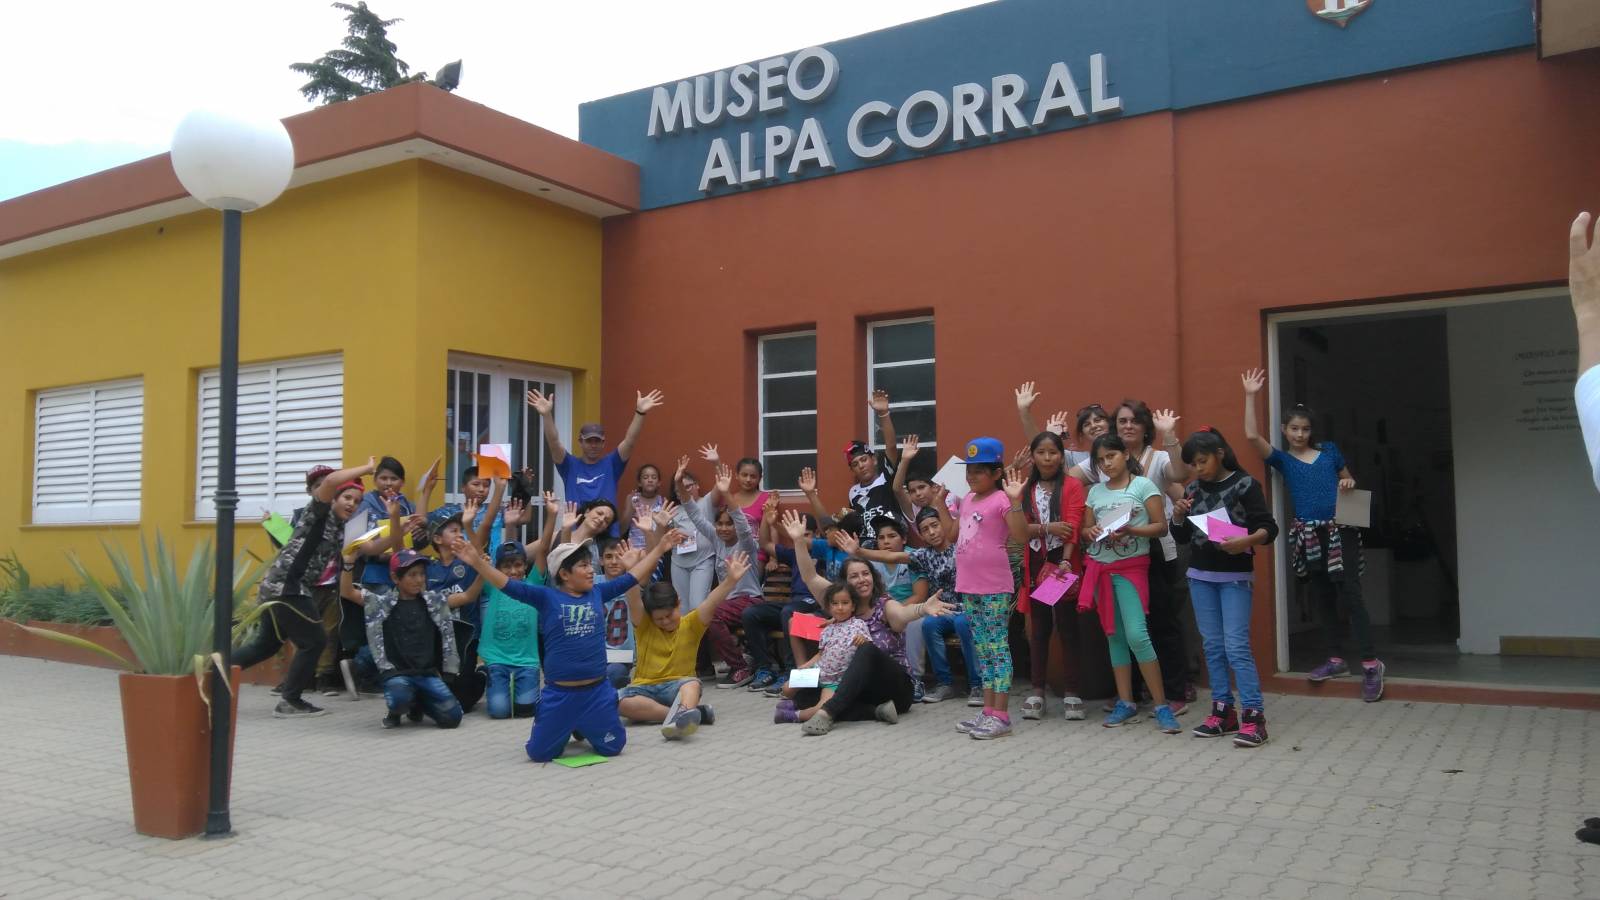 Museo Provincial de Alpa Corral